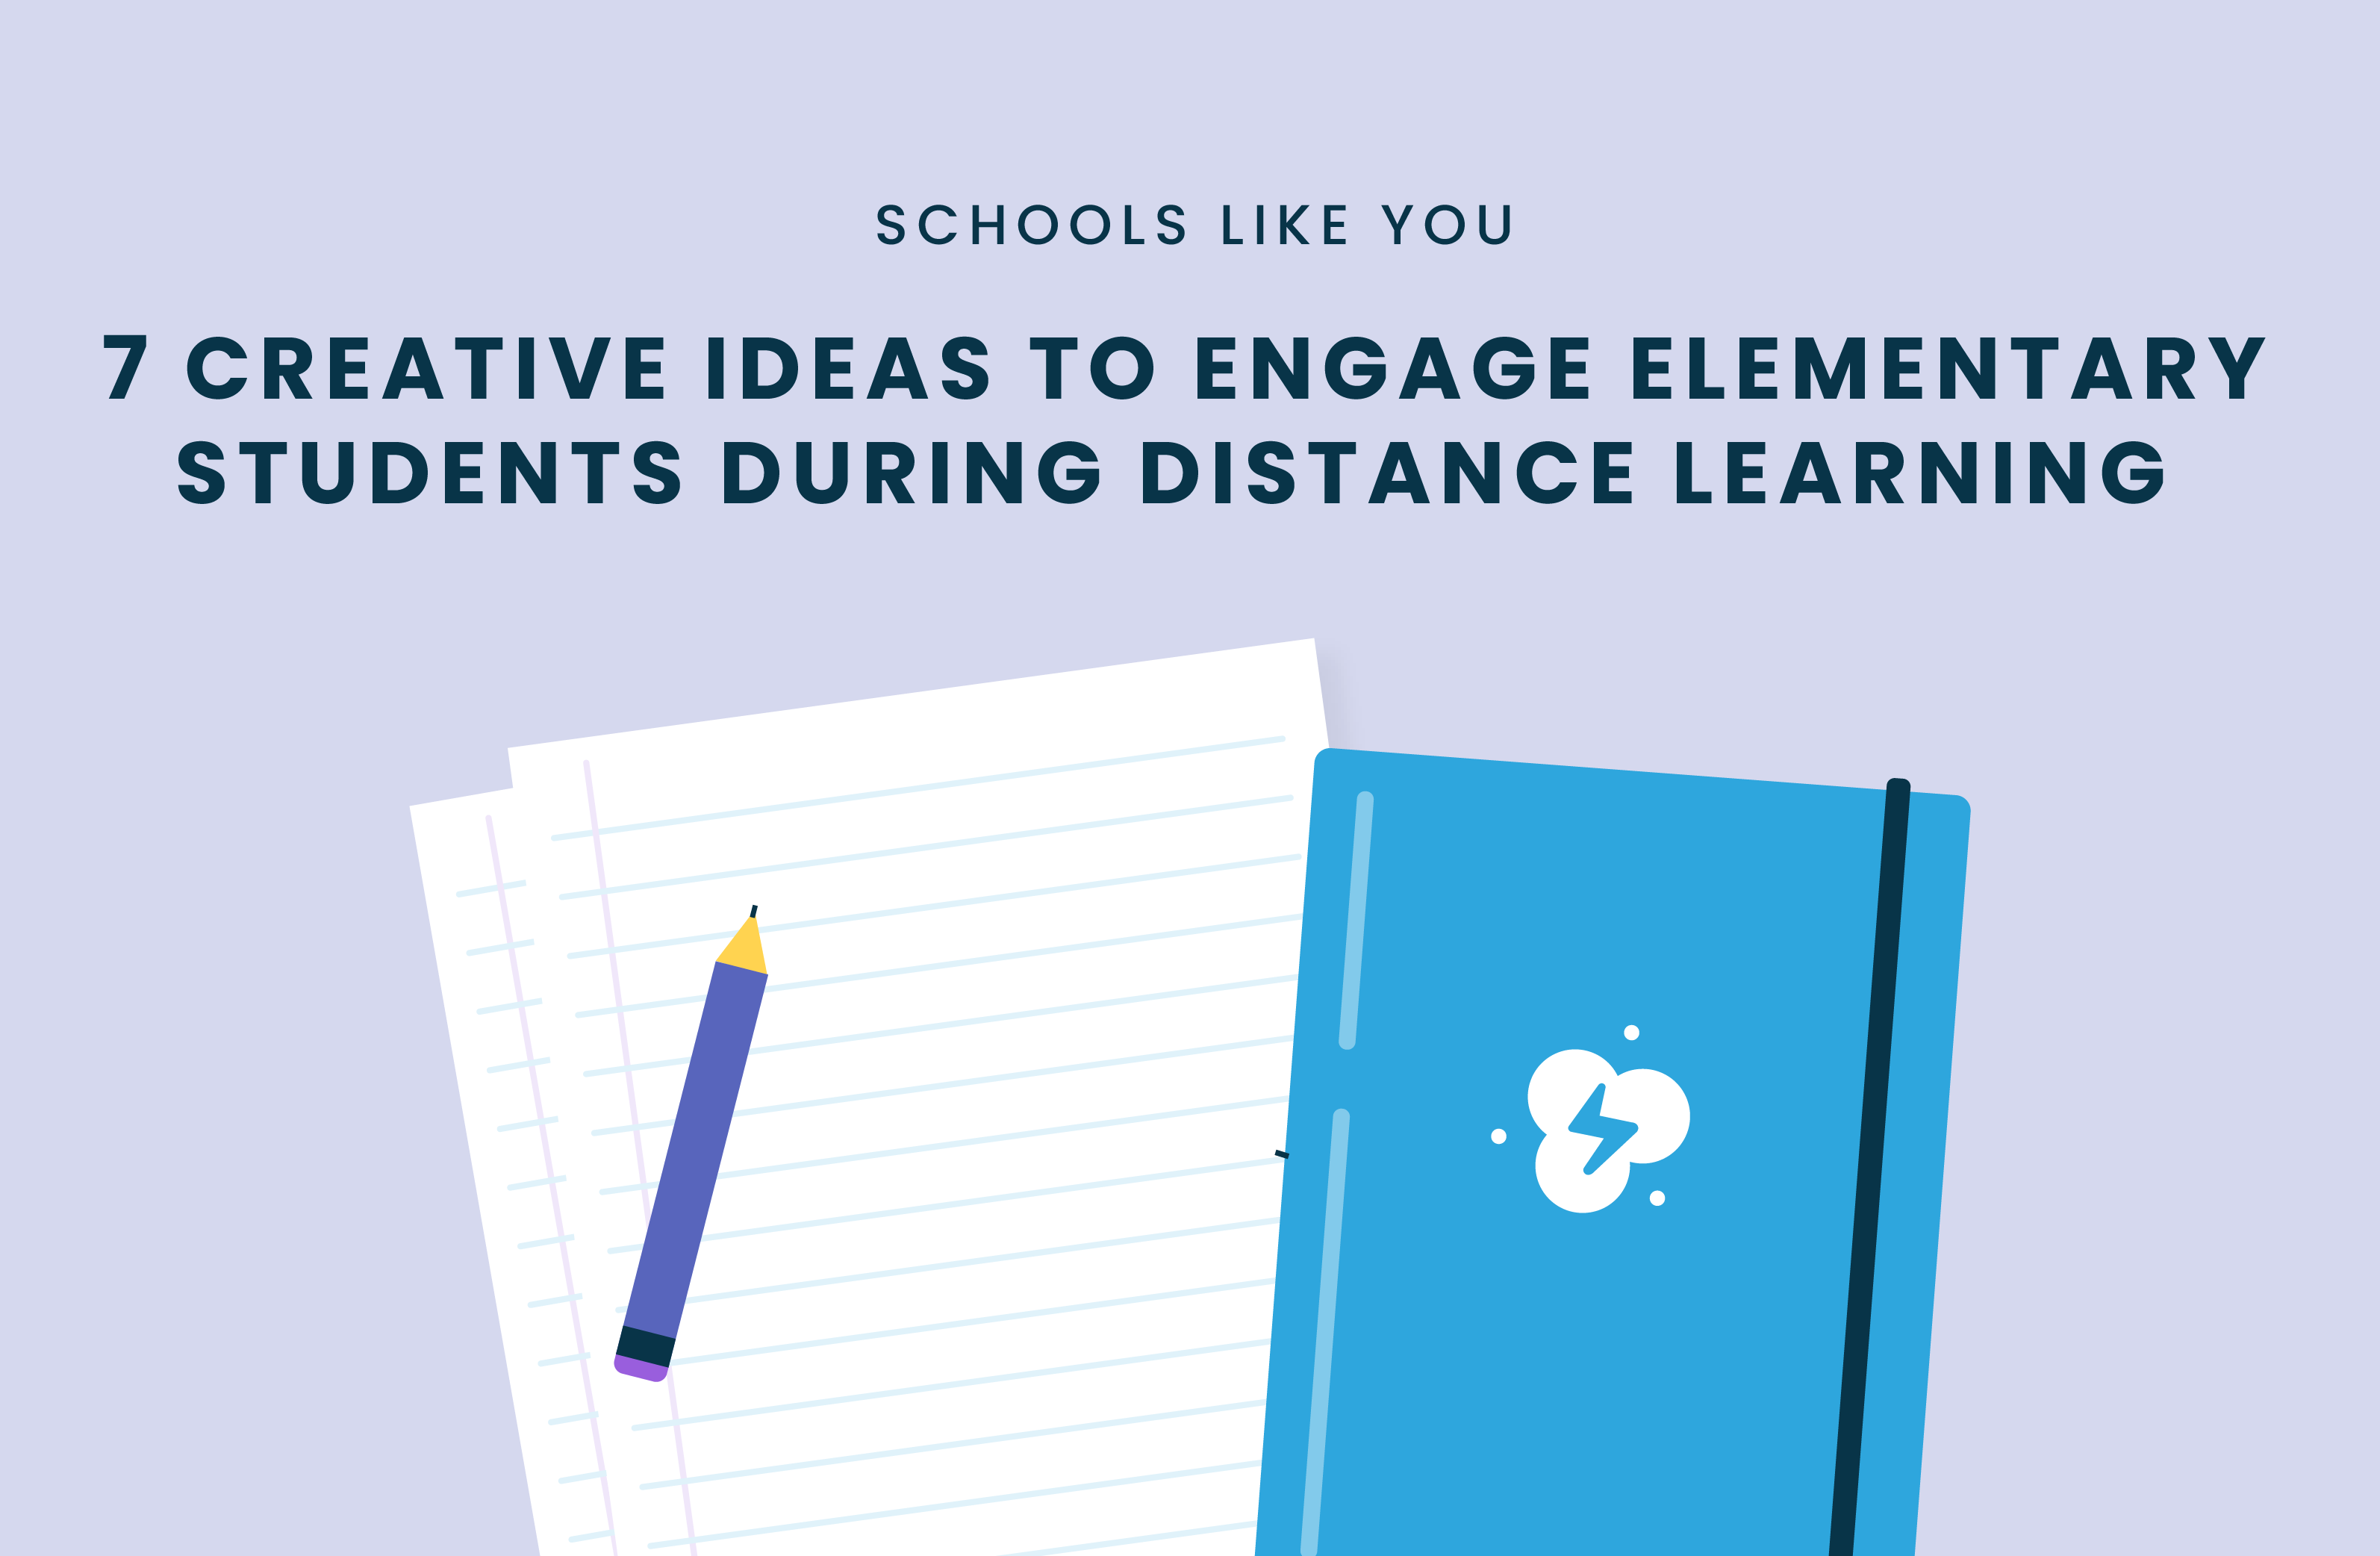 engage elementary students